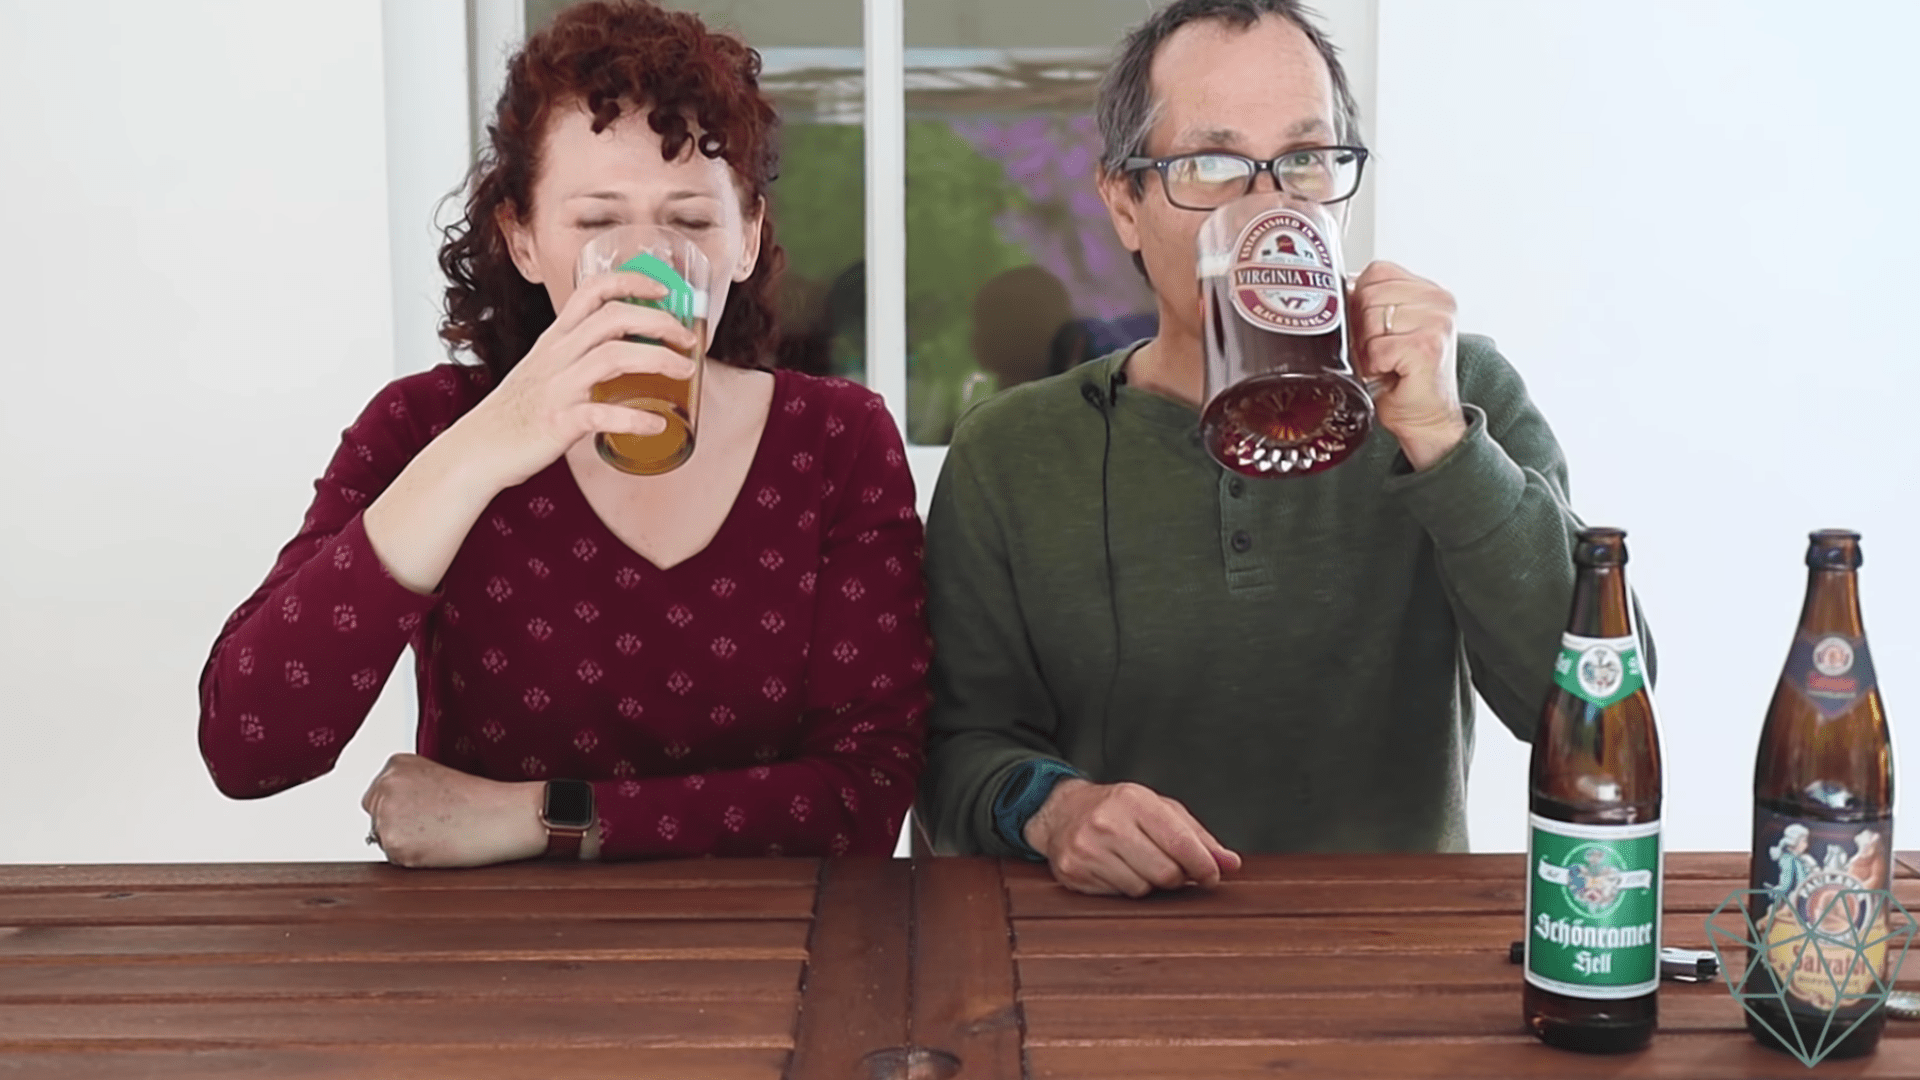 Americans trying German beer